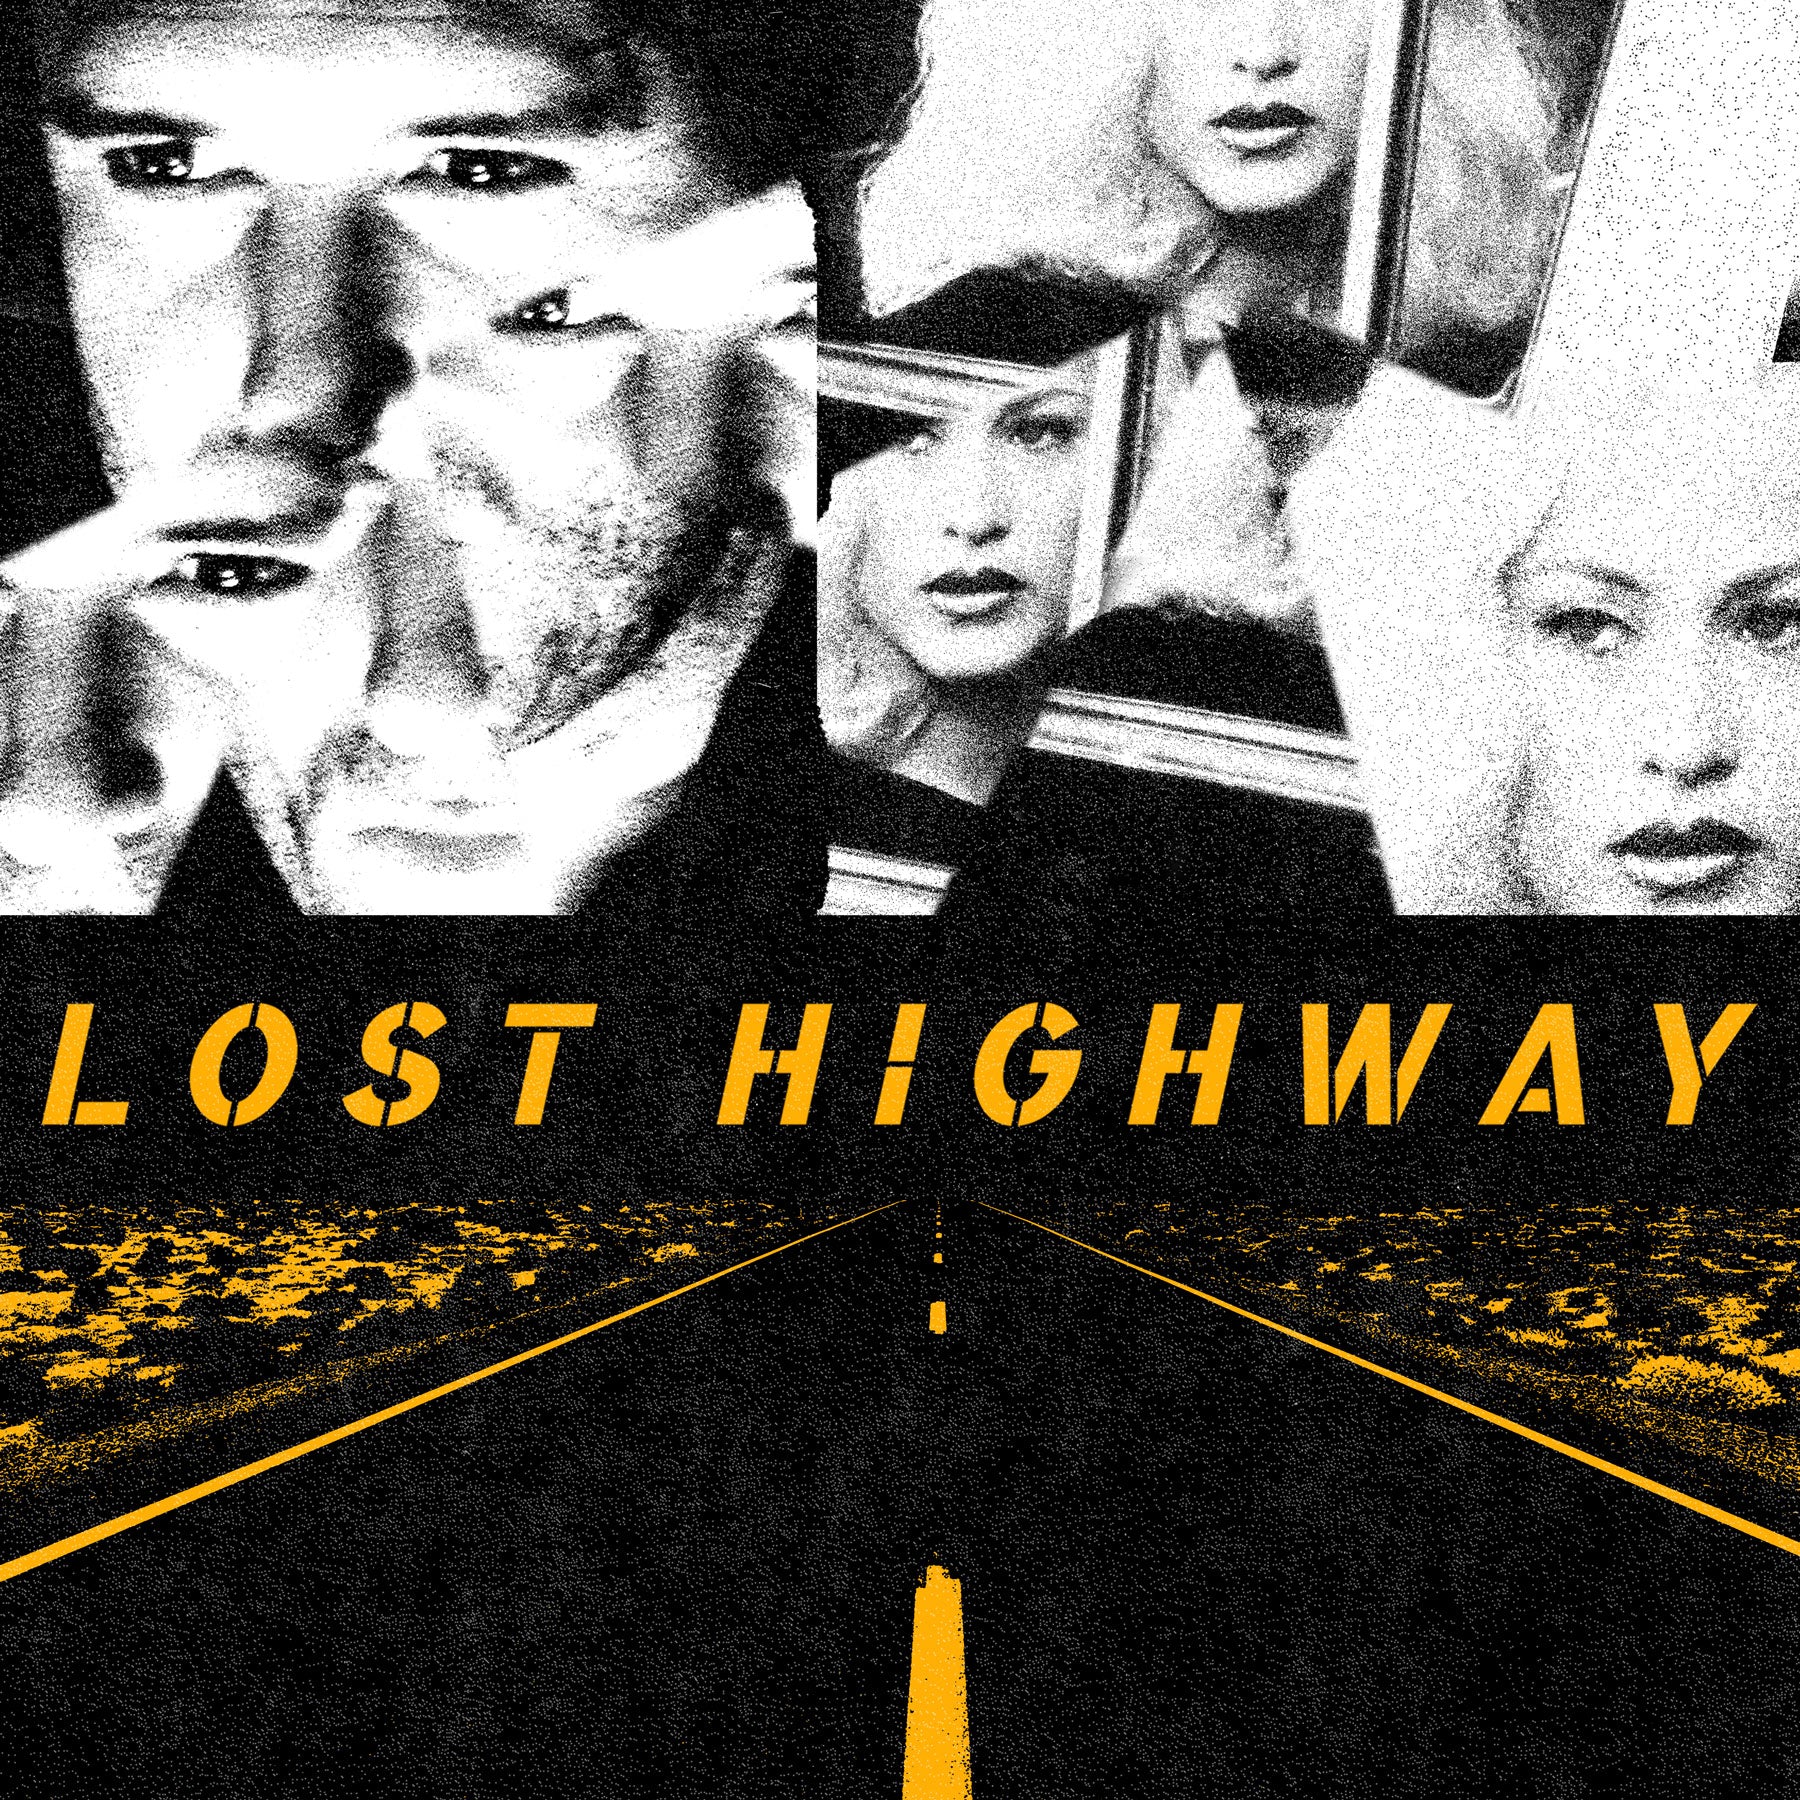 Lost Highway – Waxwork Records